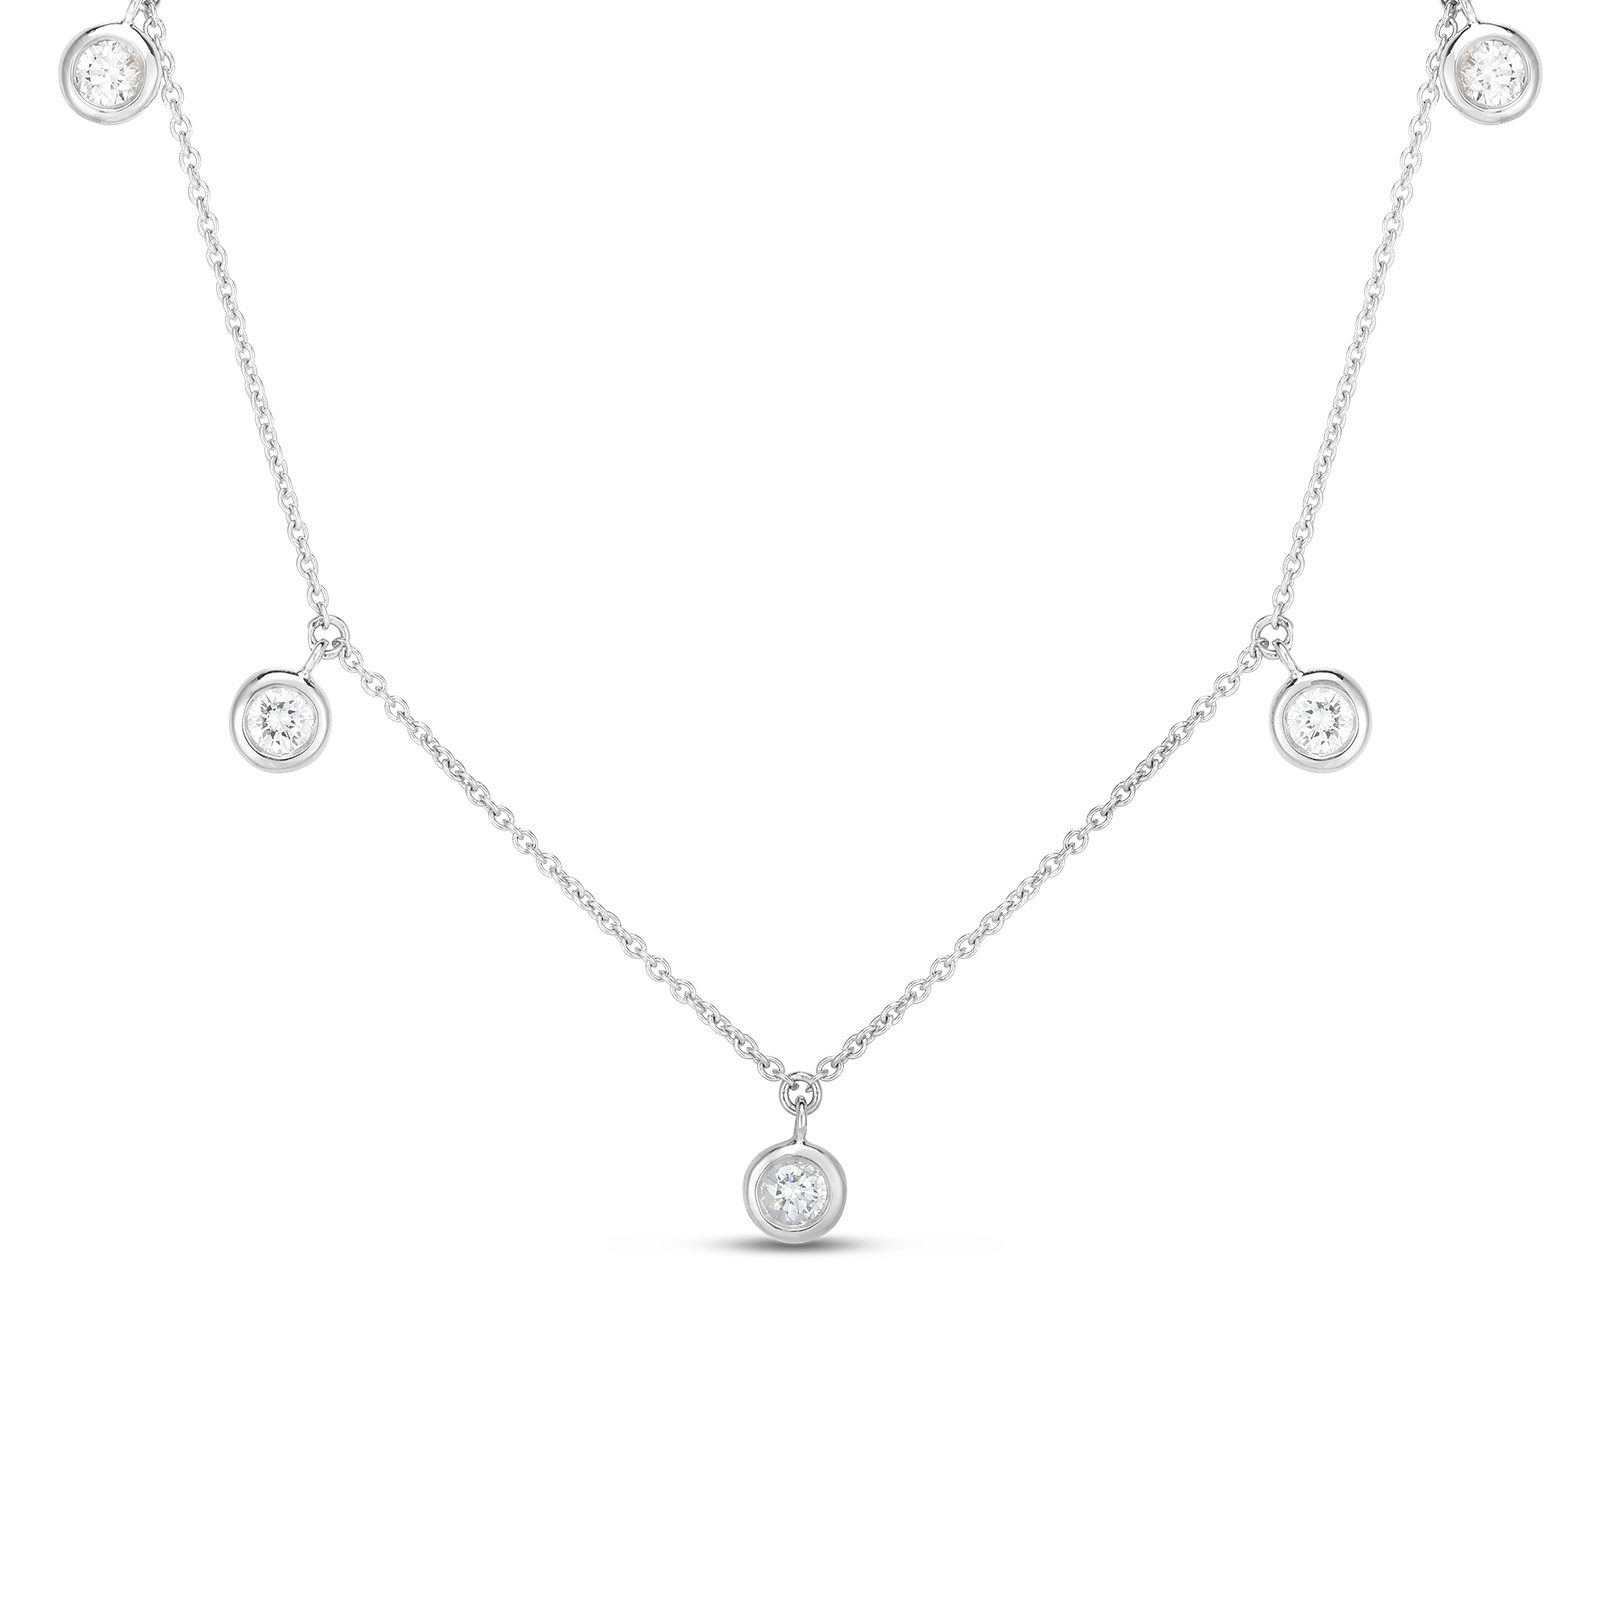 18K White Gold Five Station Diamond Necklace